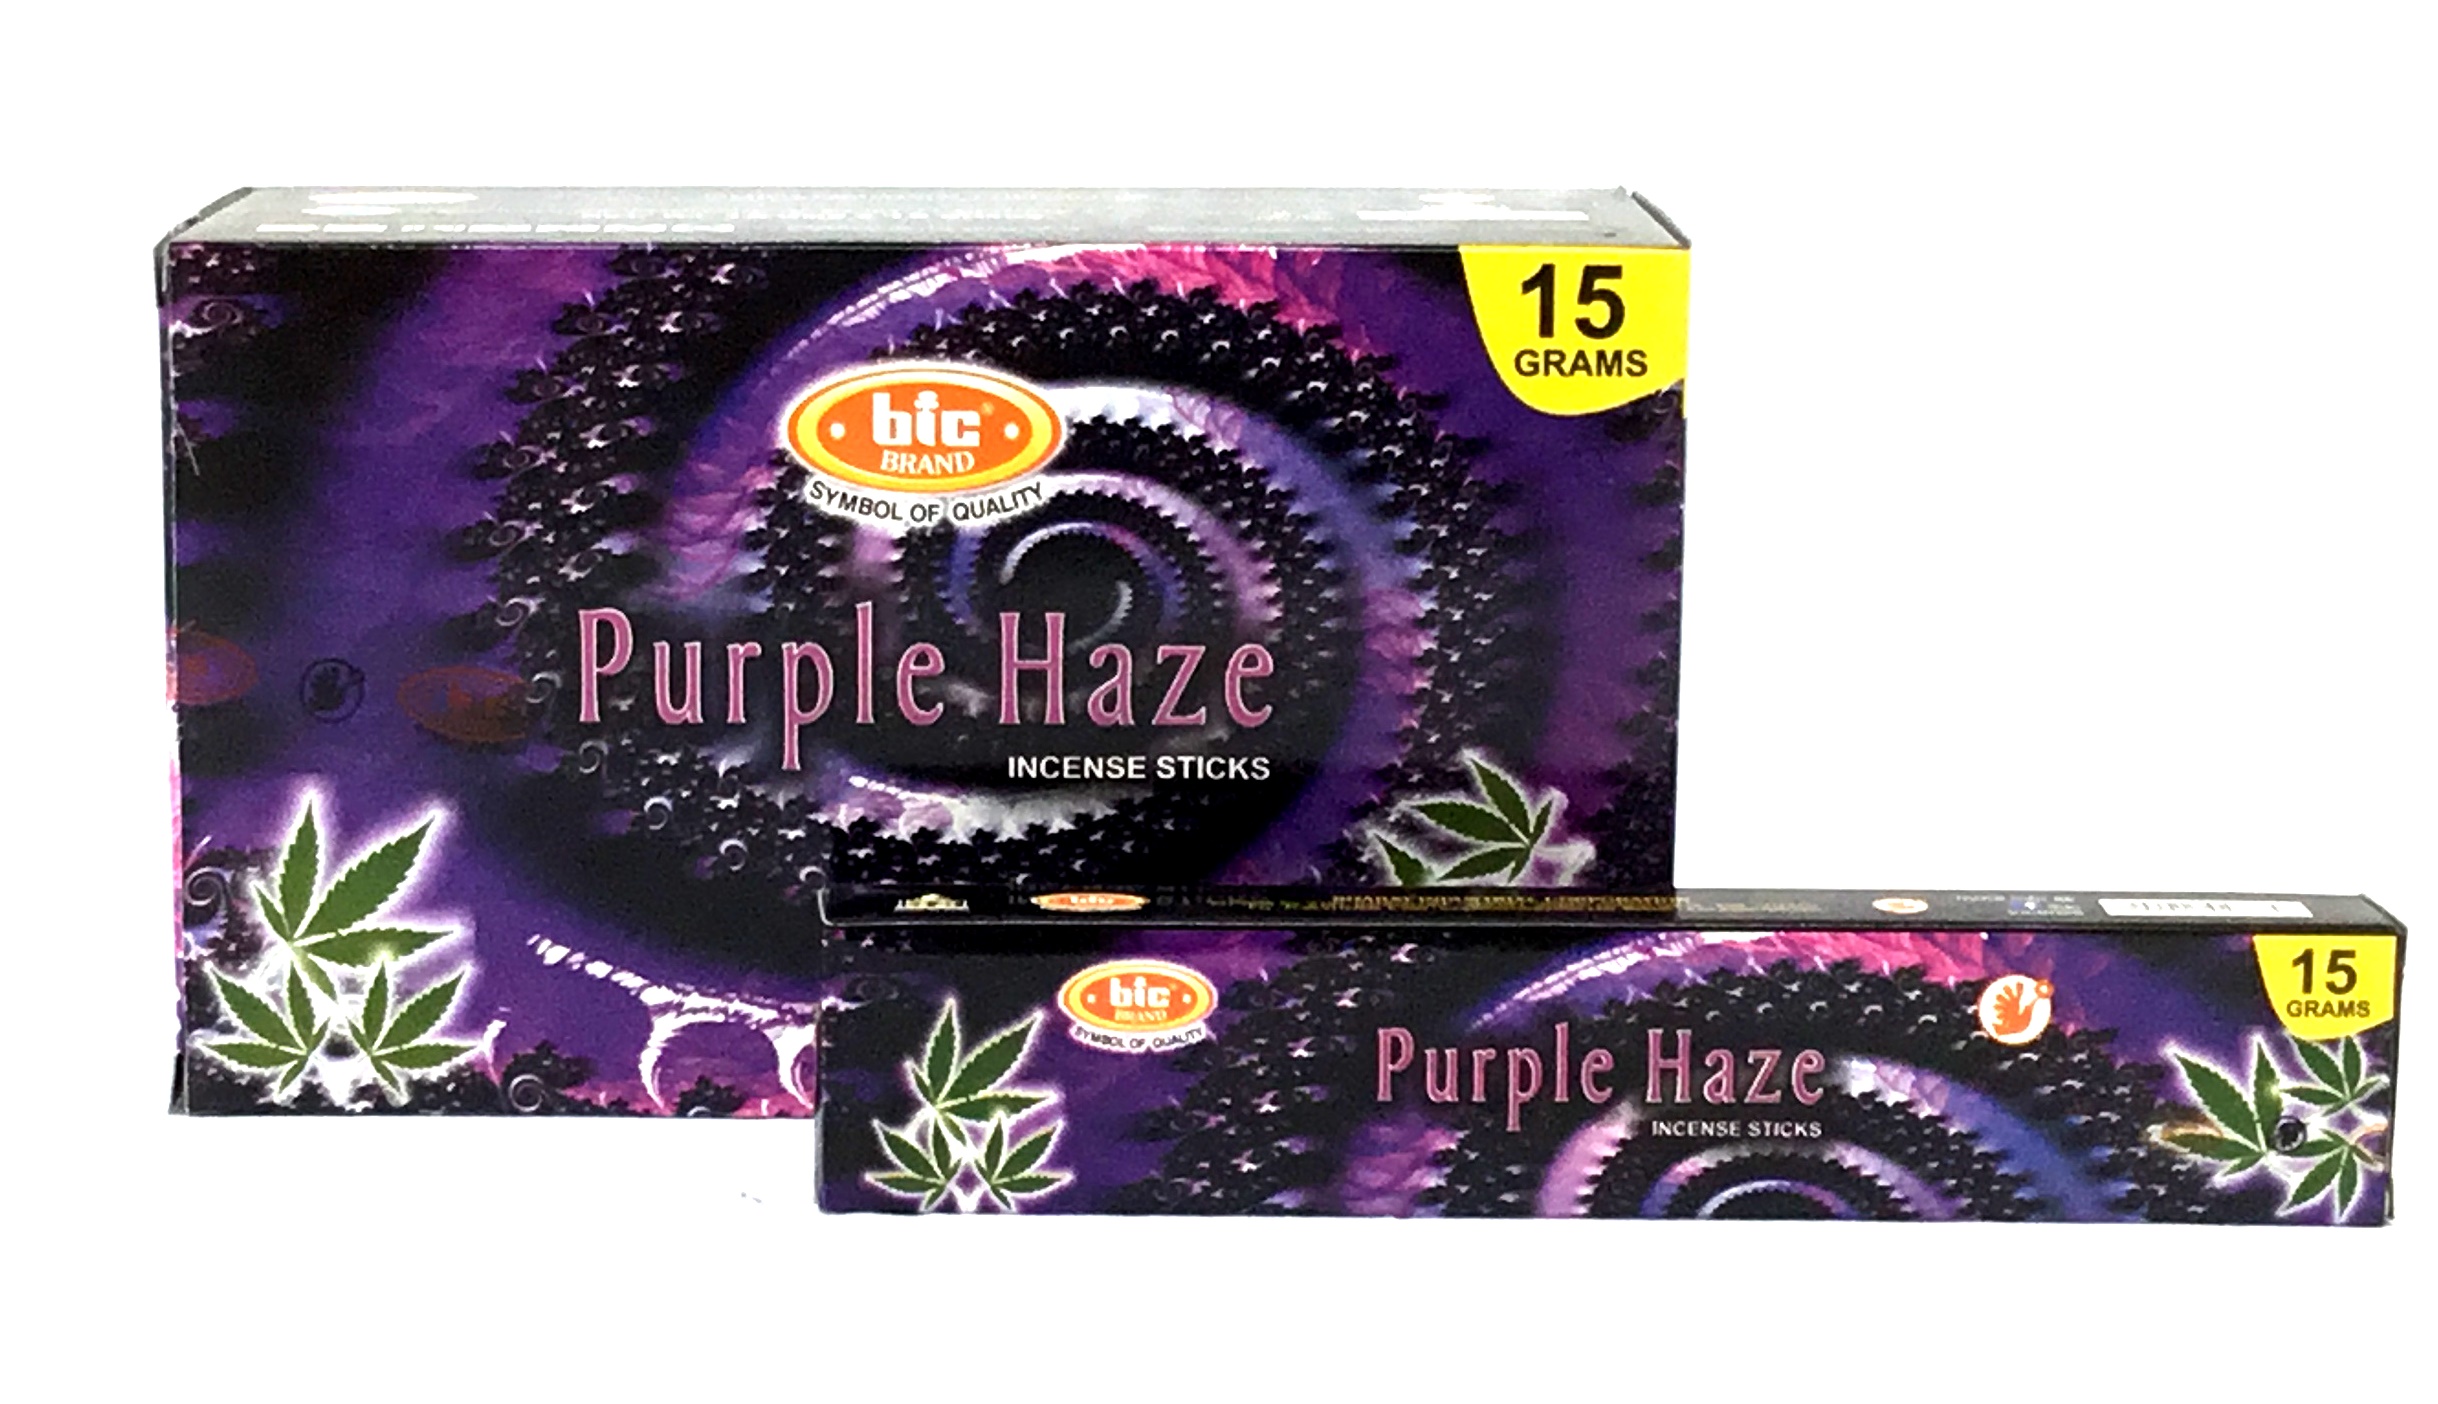 BIC Weihrauch Purple Haze (6er Pack) unter Weihrauch - Weihrauch Arten - R?ucherst?bchen - Weihrauch - Weihrauchmarken - BIC-R?ucherst?bchen